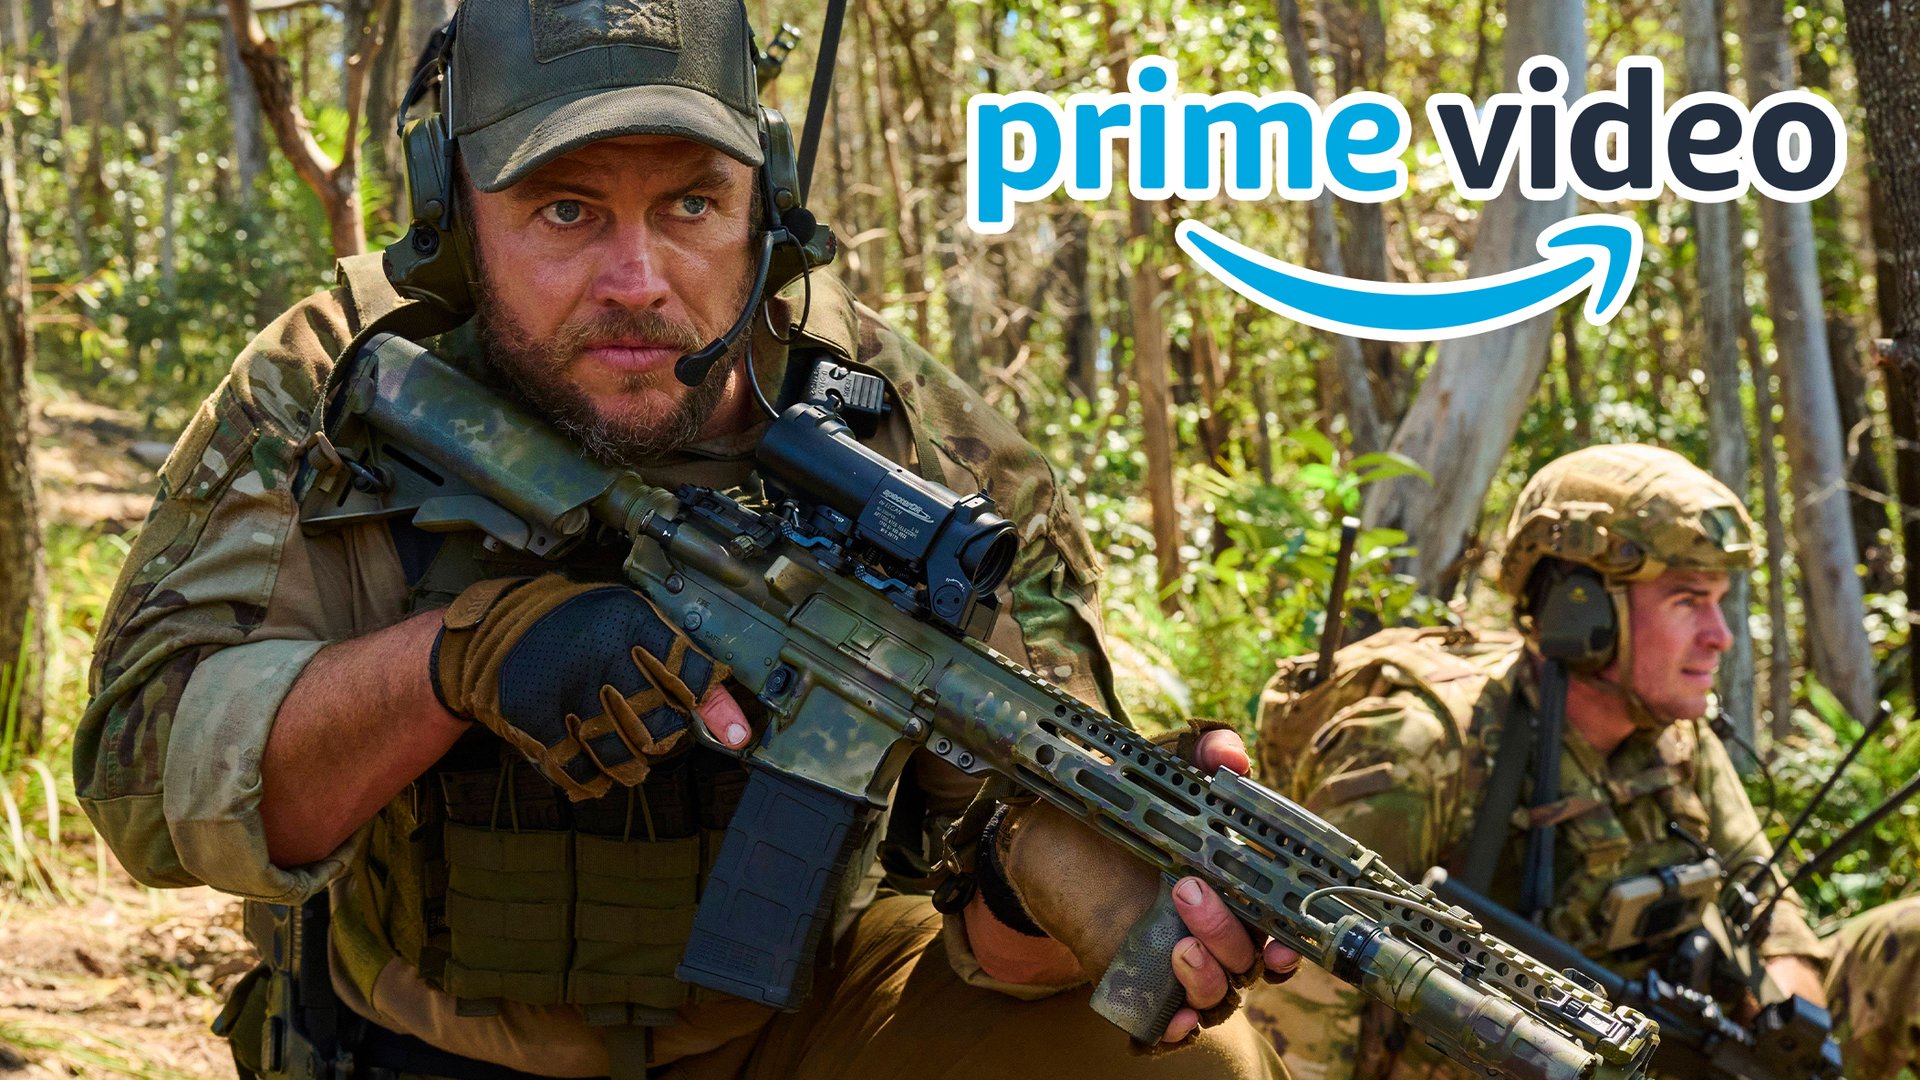 #FSK-18-Actionfilm erklimmt Platz 1 der Amazon-Prime-Video-Charts